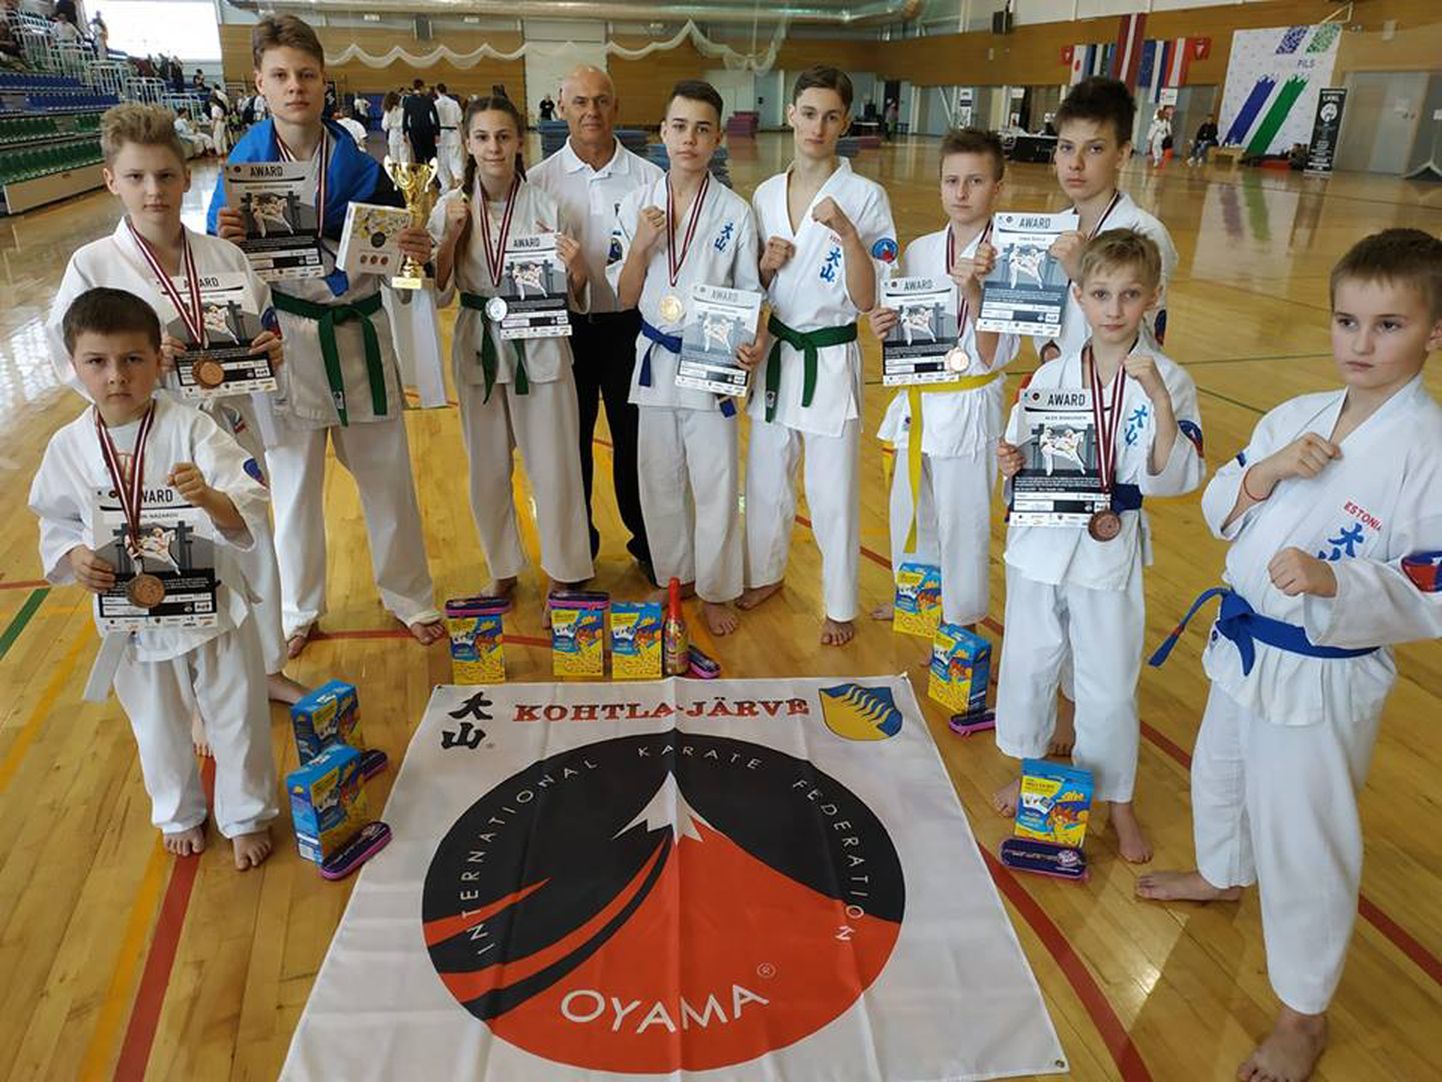 Kohtla-Järve karatekad tõestasid Lätis, et on tugevad vastased.